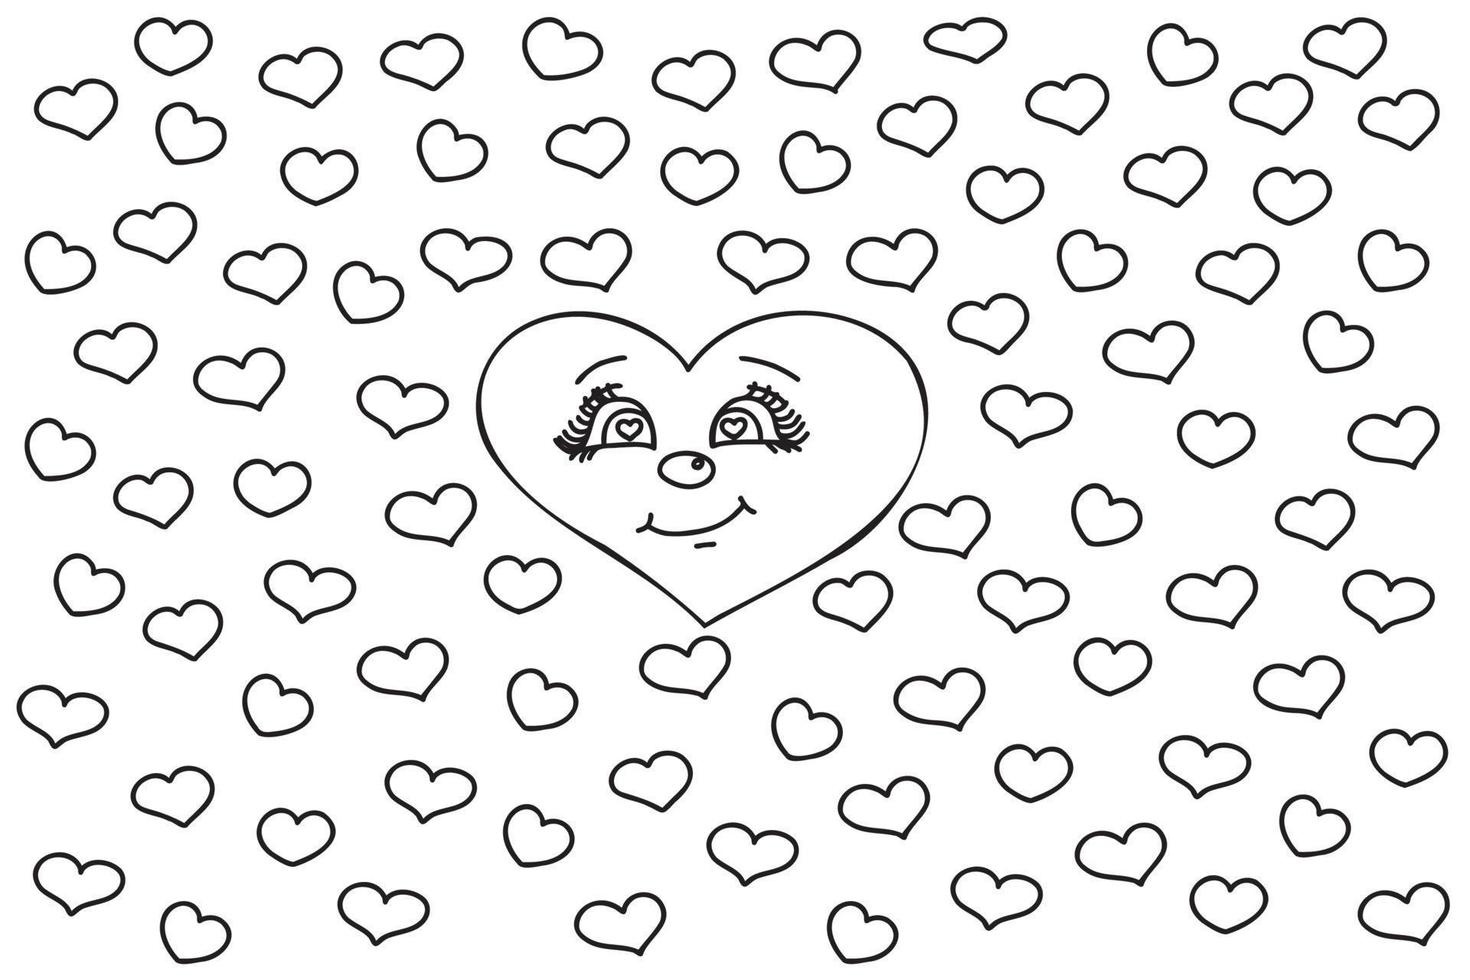 getrokken met een hart gezicht omringd door klein harten bedoeld voor de vakantie van liefde, valentijn, maart 8, kaarten, prints en andere gelegenheden. vector